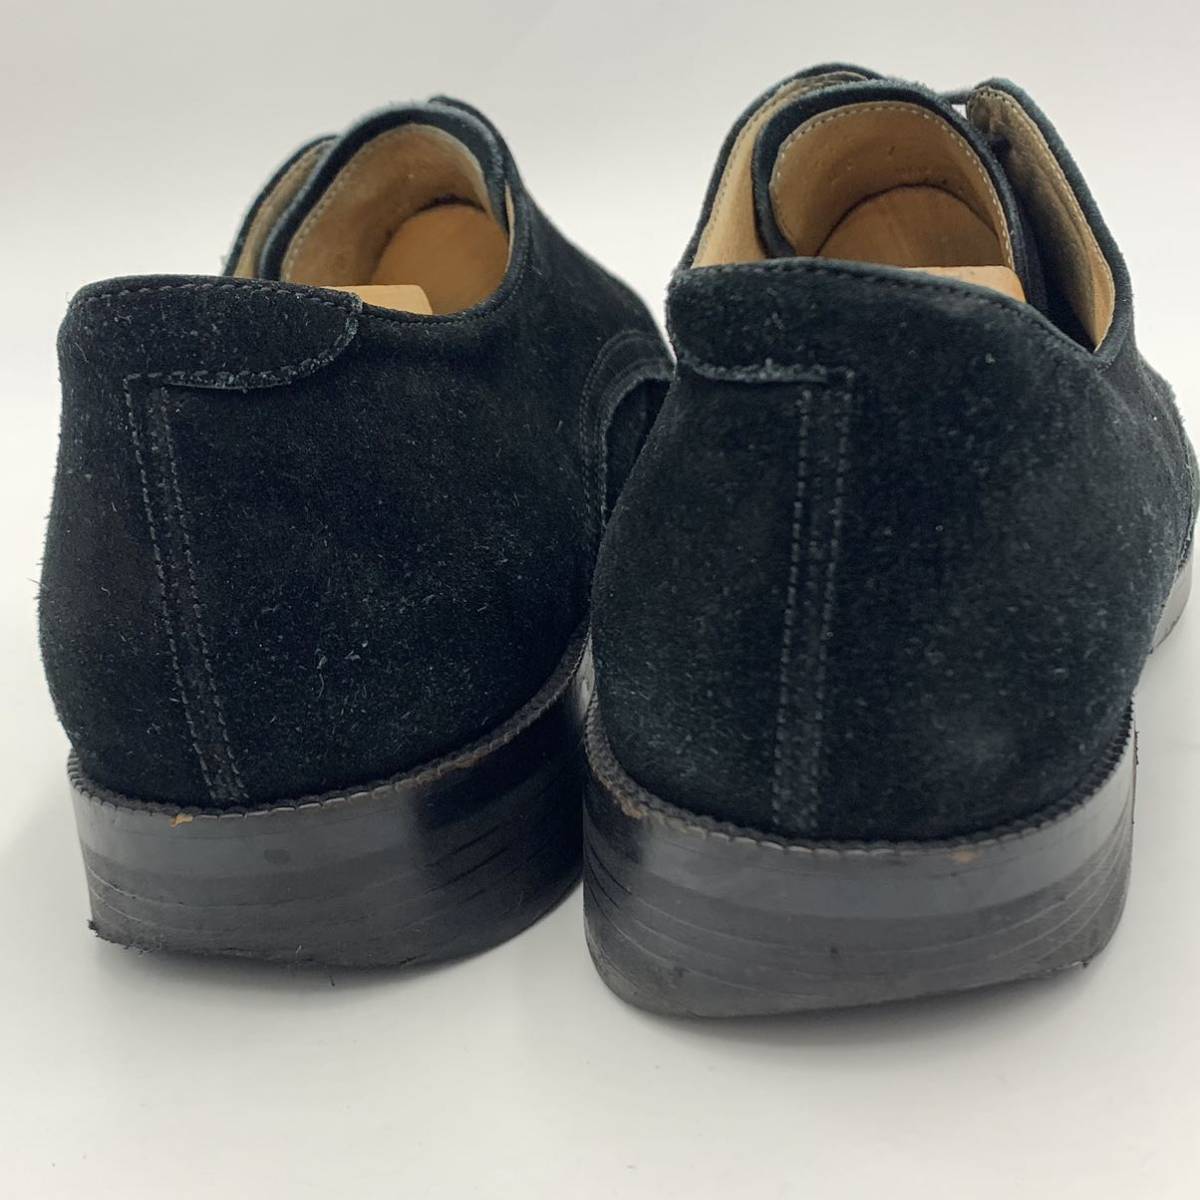 B☆ 上質スエードレザー '日本製' BEAUTY & YOUTH UNITED ARROWS ユナイテッドアローズ 革靴 ビジネスシューズ プレーントゥ 25.0cm 紳士靴_画像3